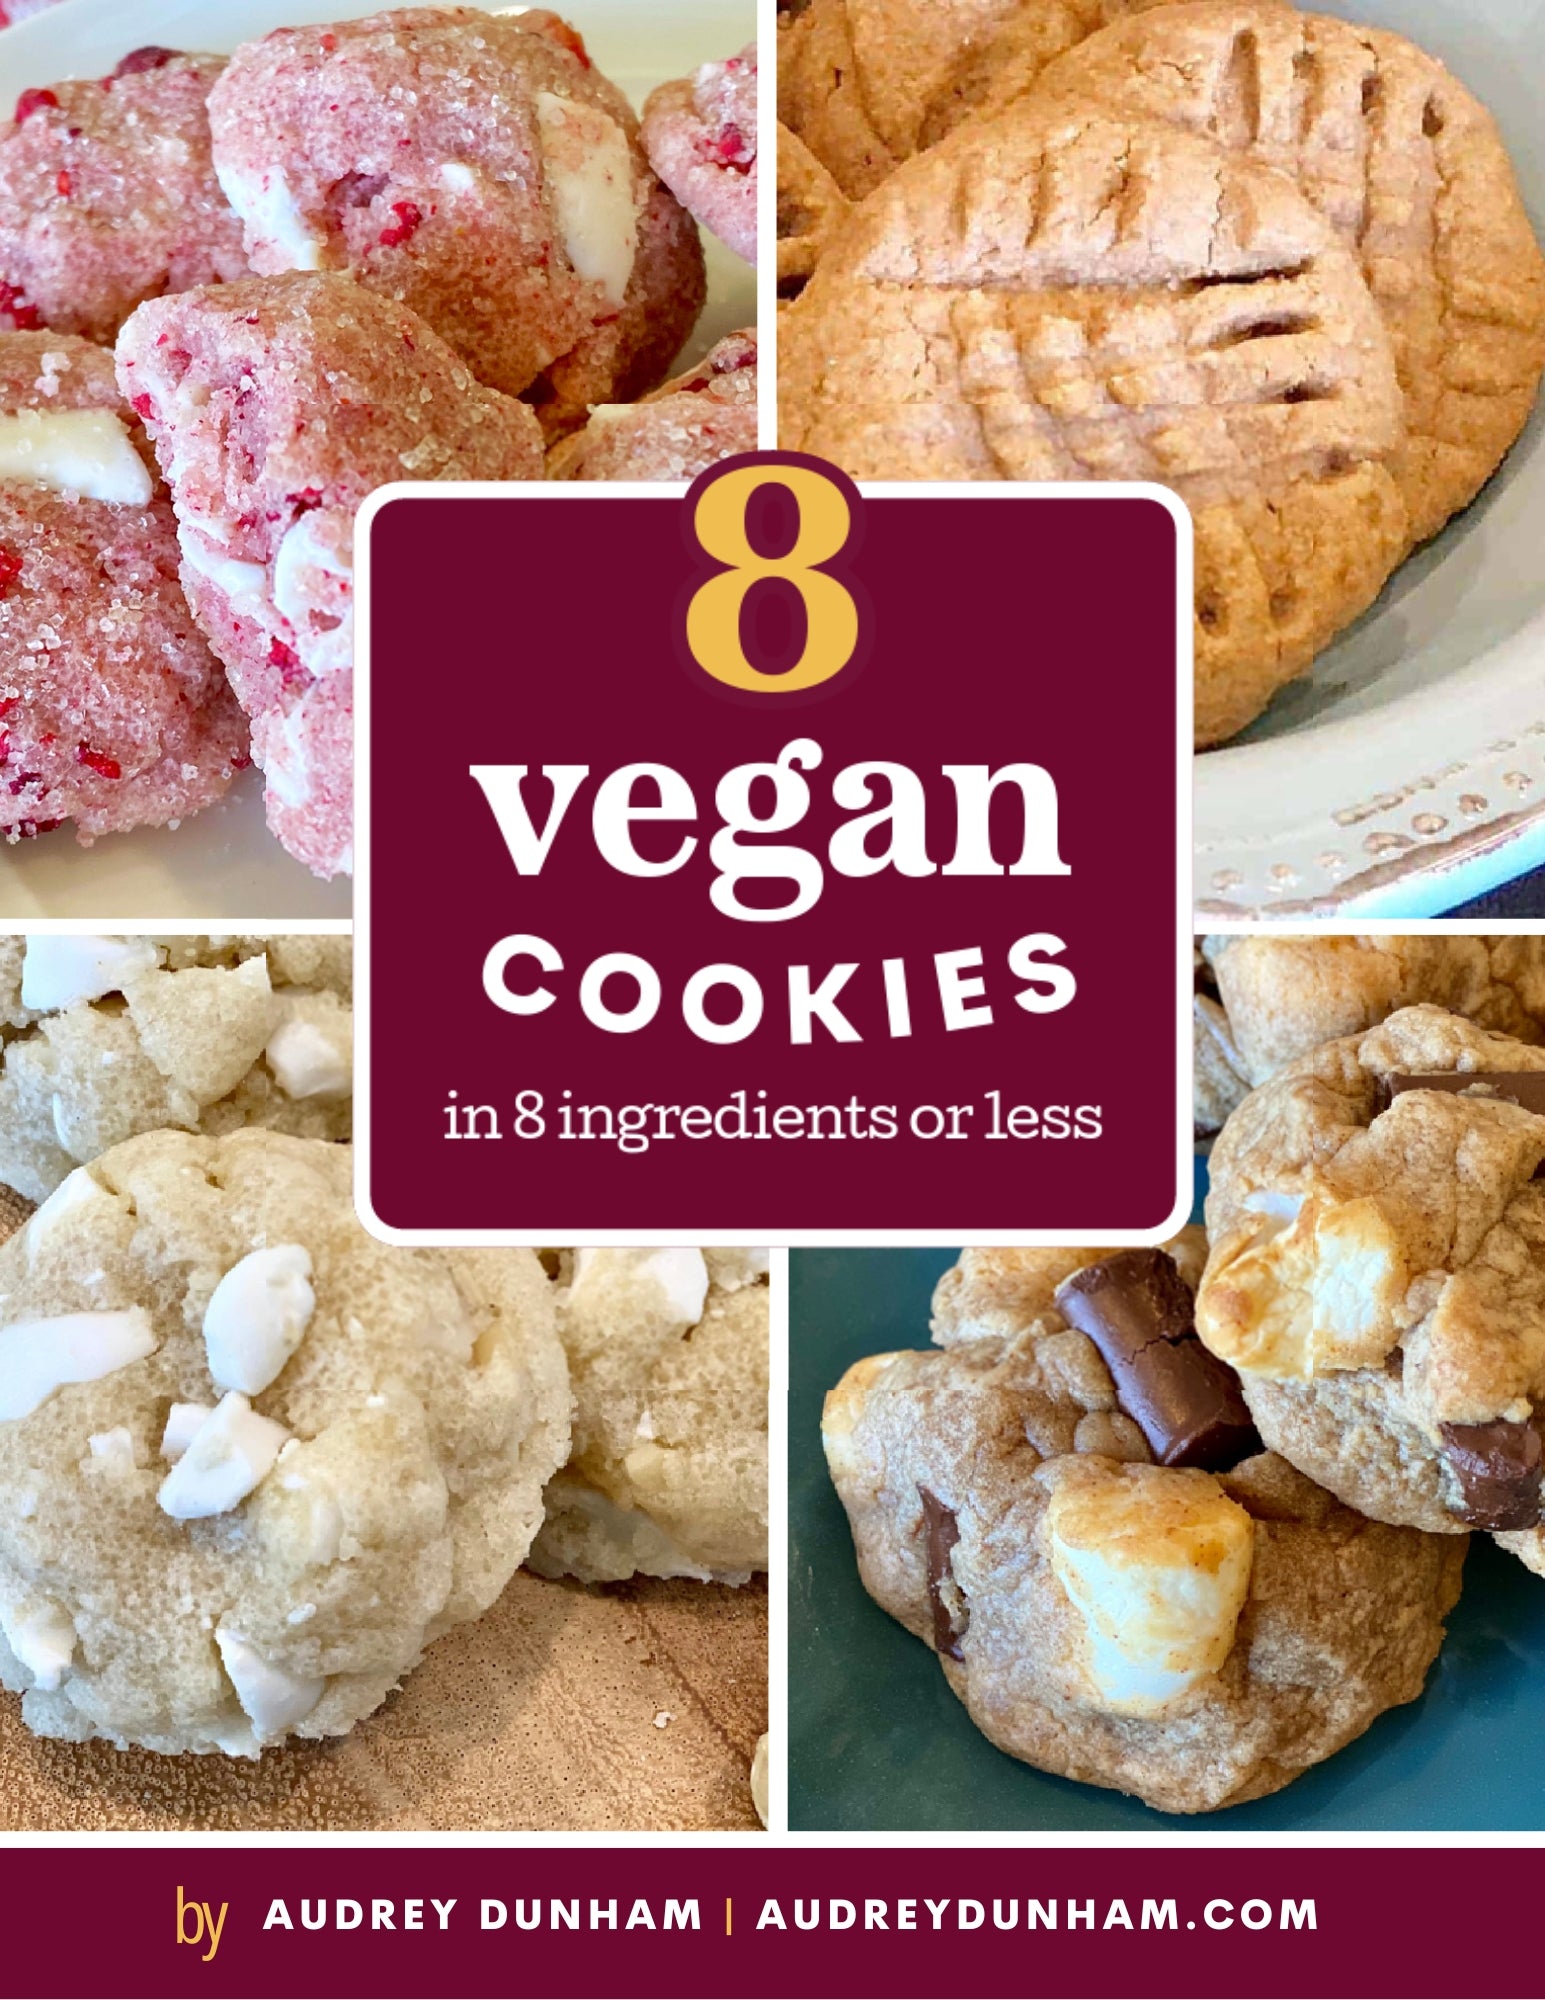 FREE Ebook! 8 Vegan Cookies in 8 Ingredients or Less